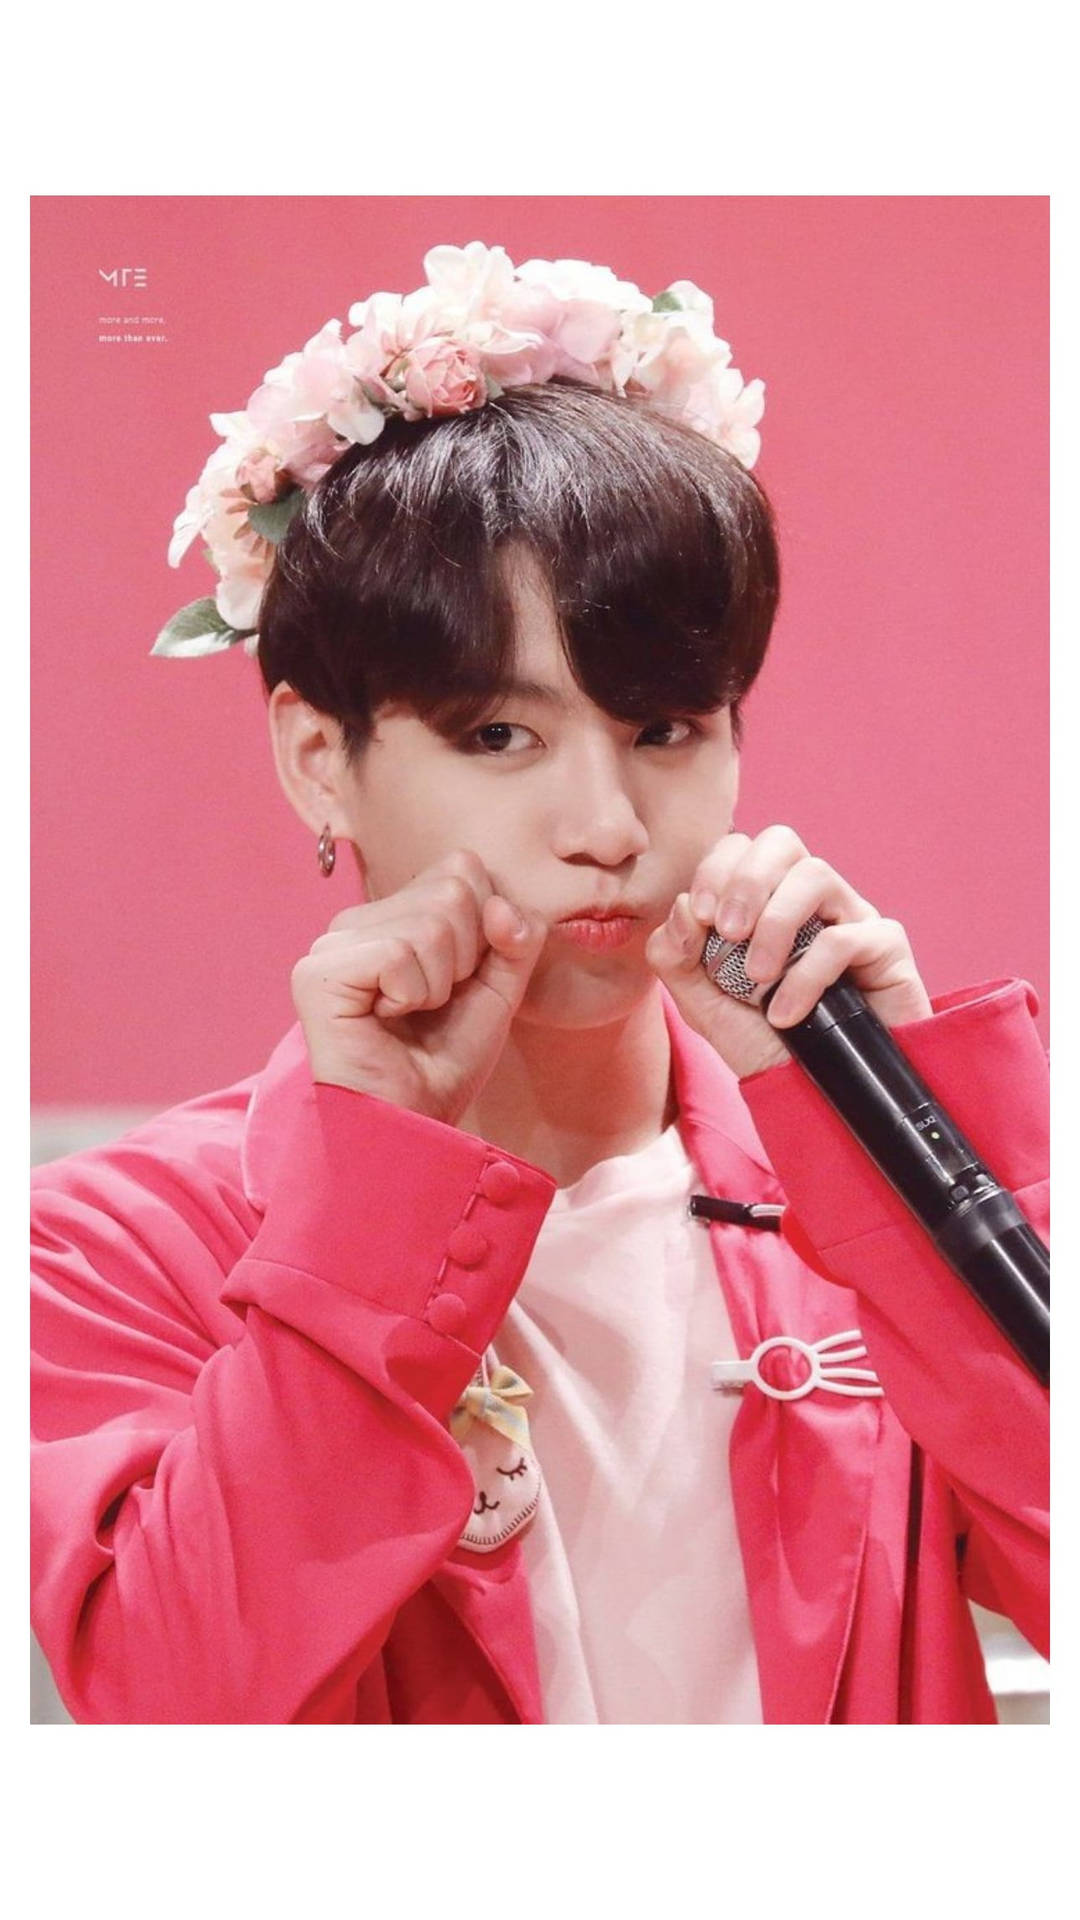 Bts Jung Kook Cute Flower Crown Background